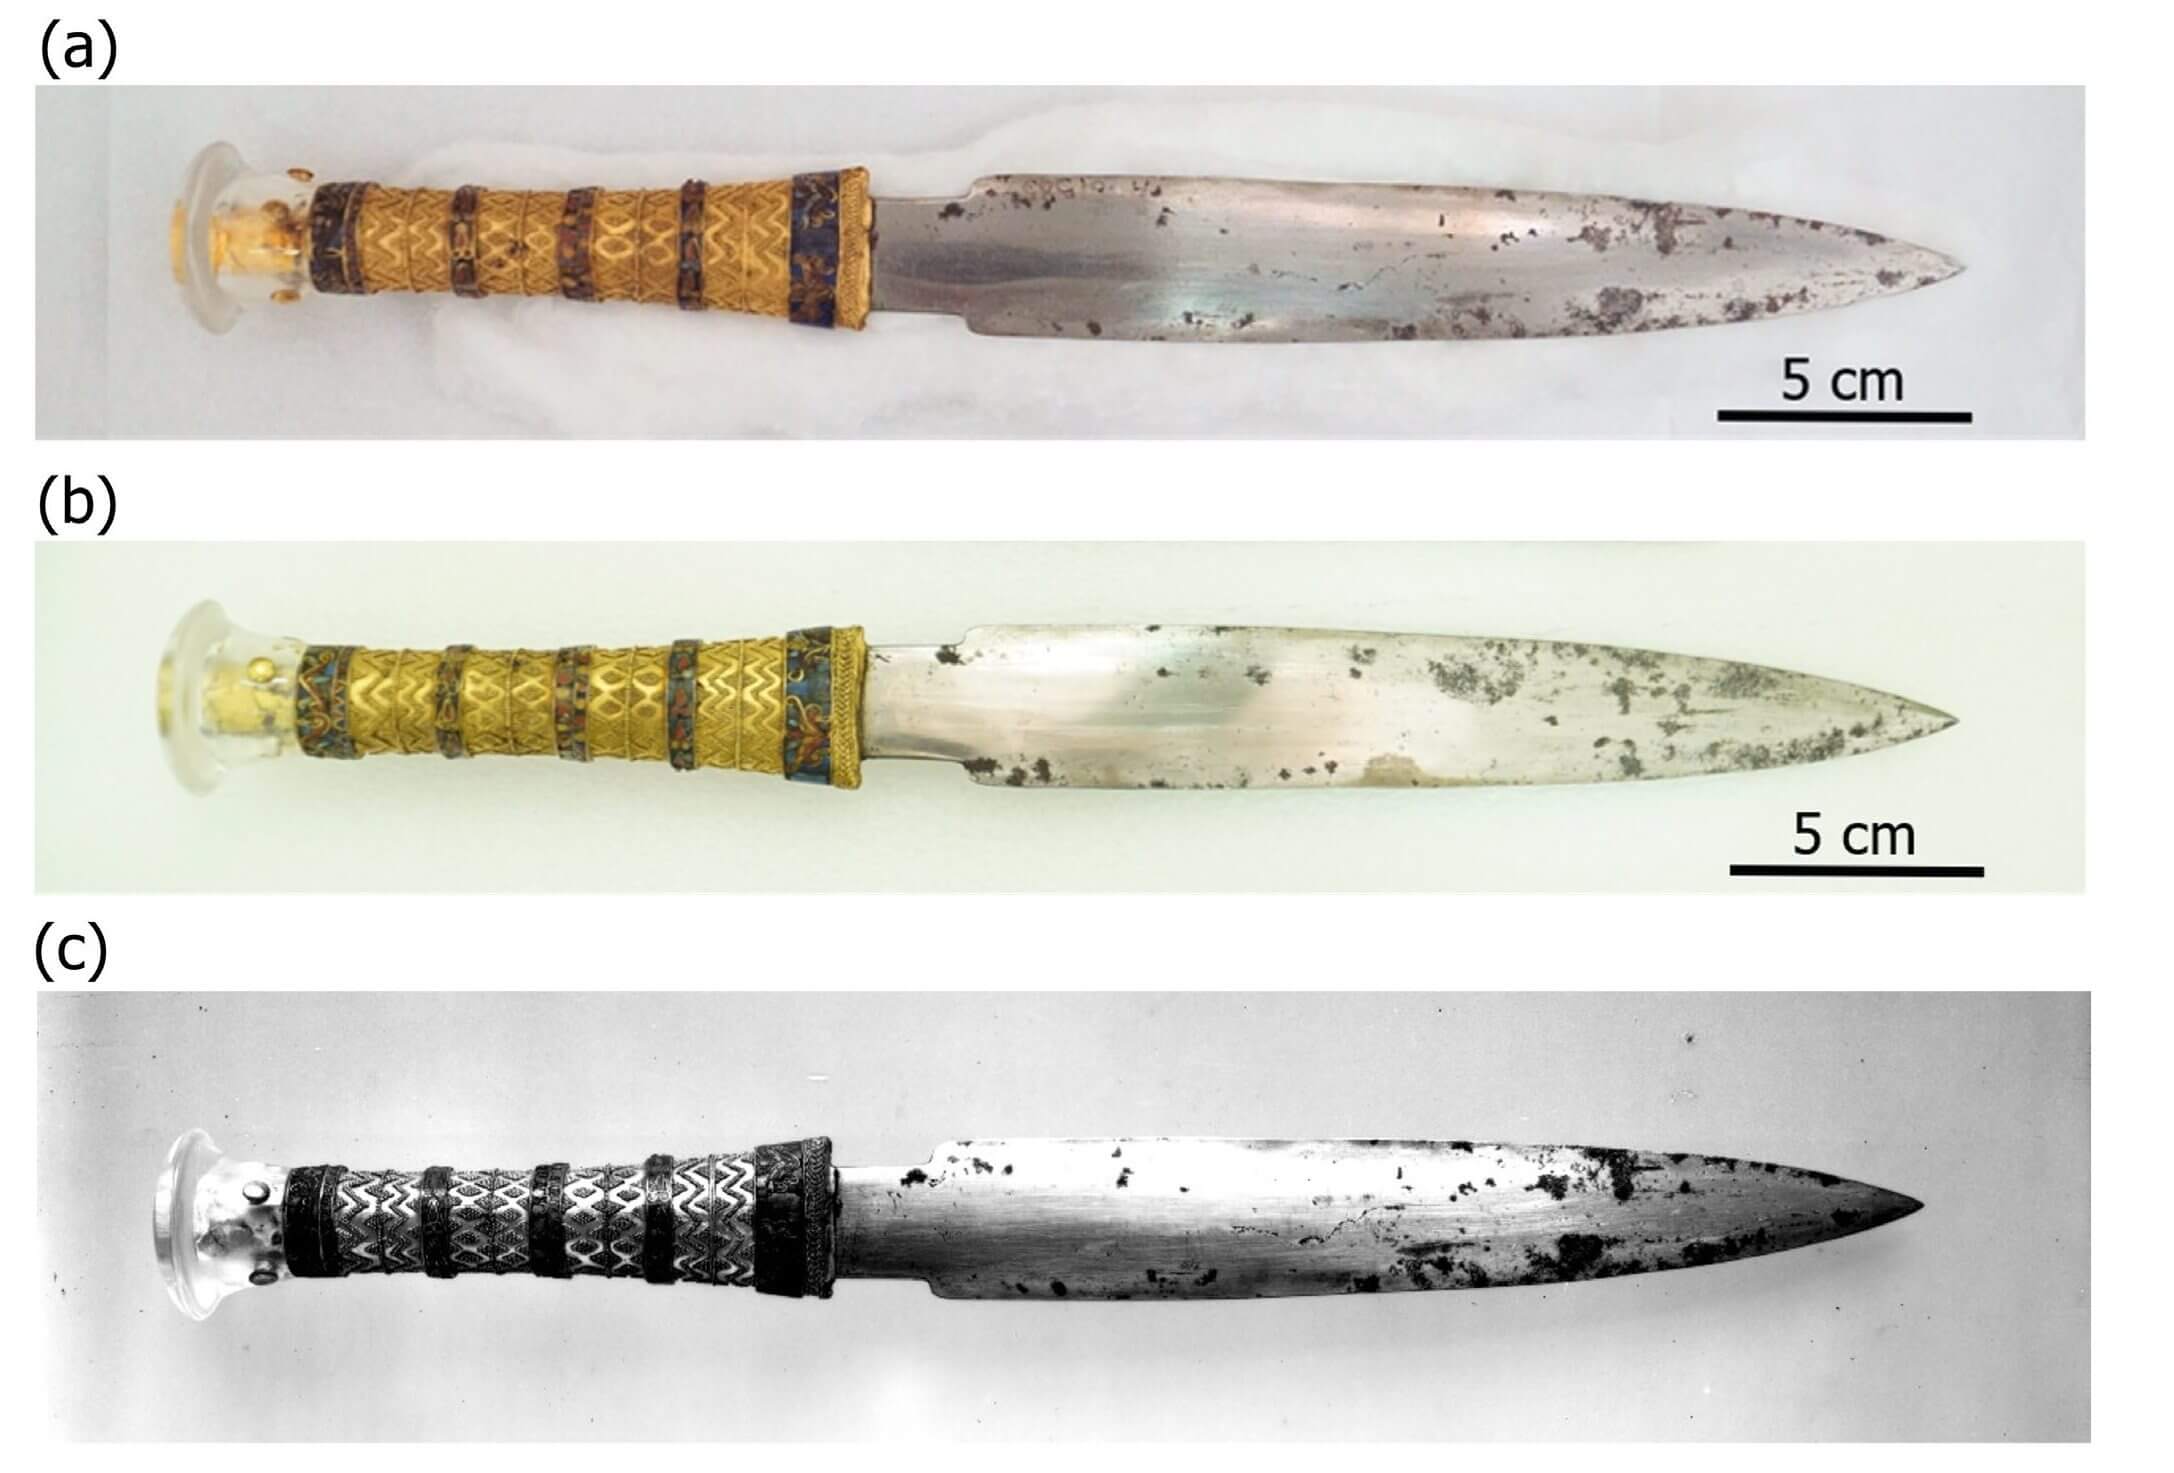 ツタンカーメンの棺から発見された鉄製の短剣